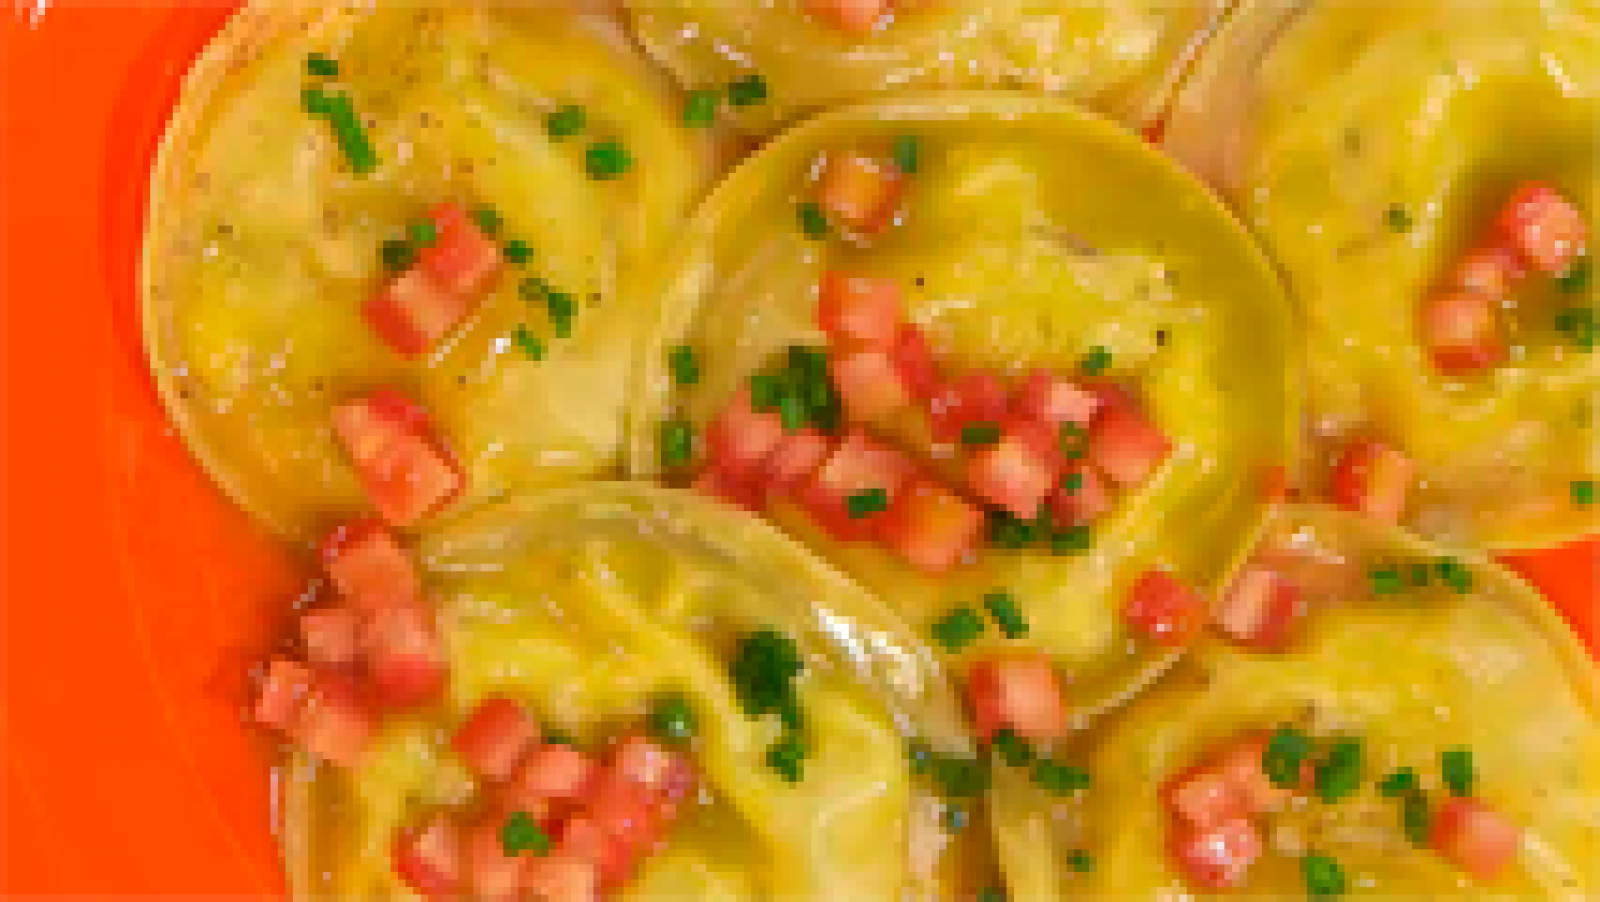 Torres en la cocina - Receta de raviolis salados de queso